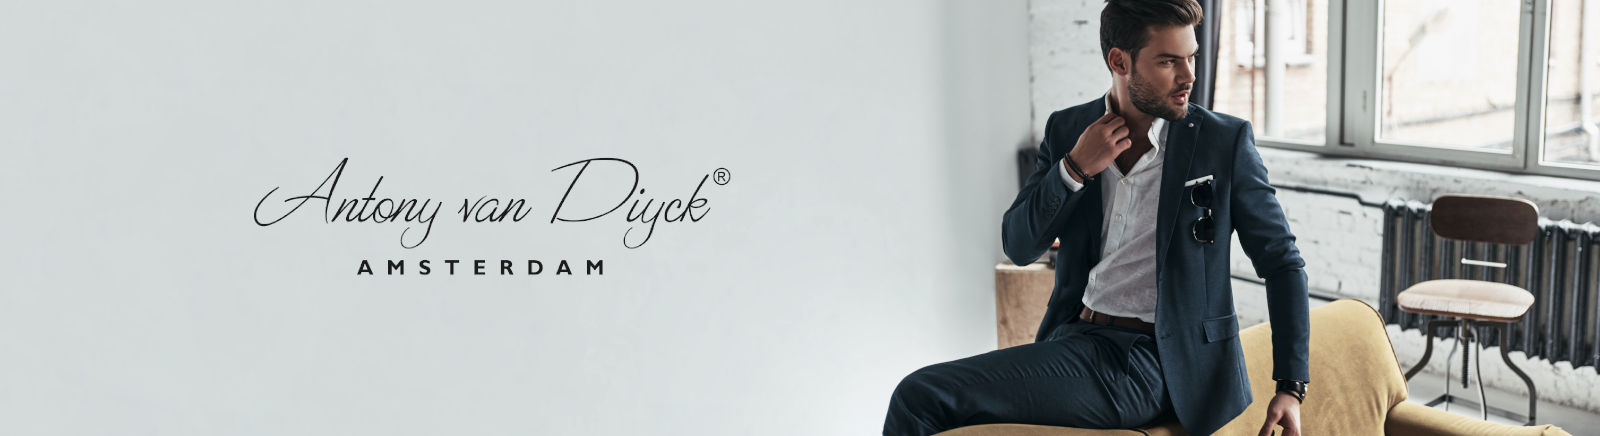 Antony van Diyck Boots für Damen im Online-Shop von GISY kaufen